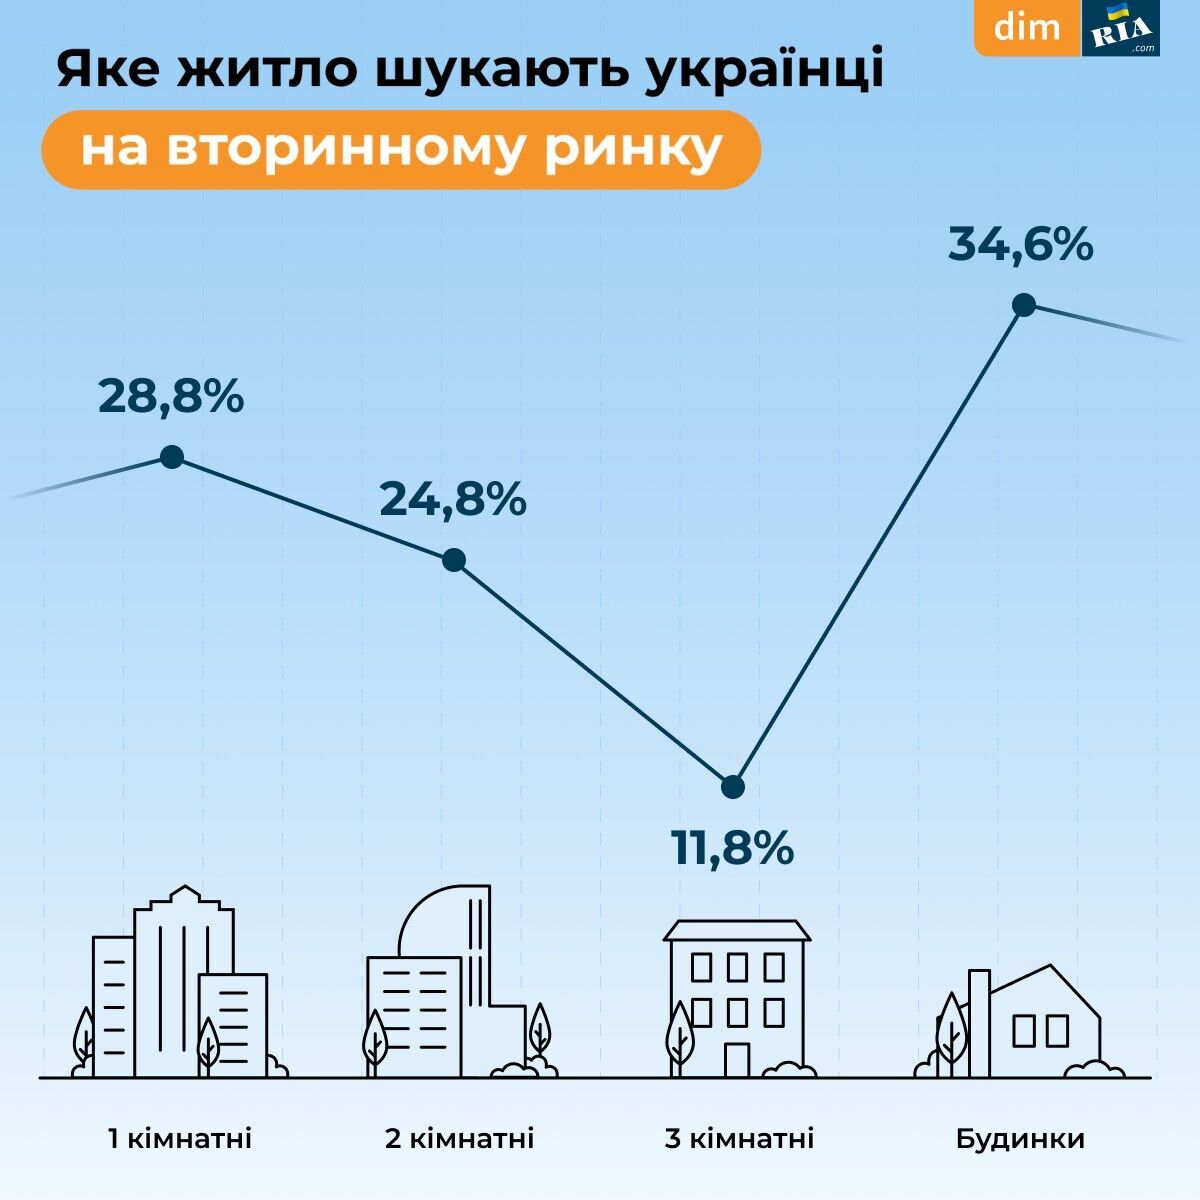 Українці стали активніше шукати будинки для покупки